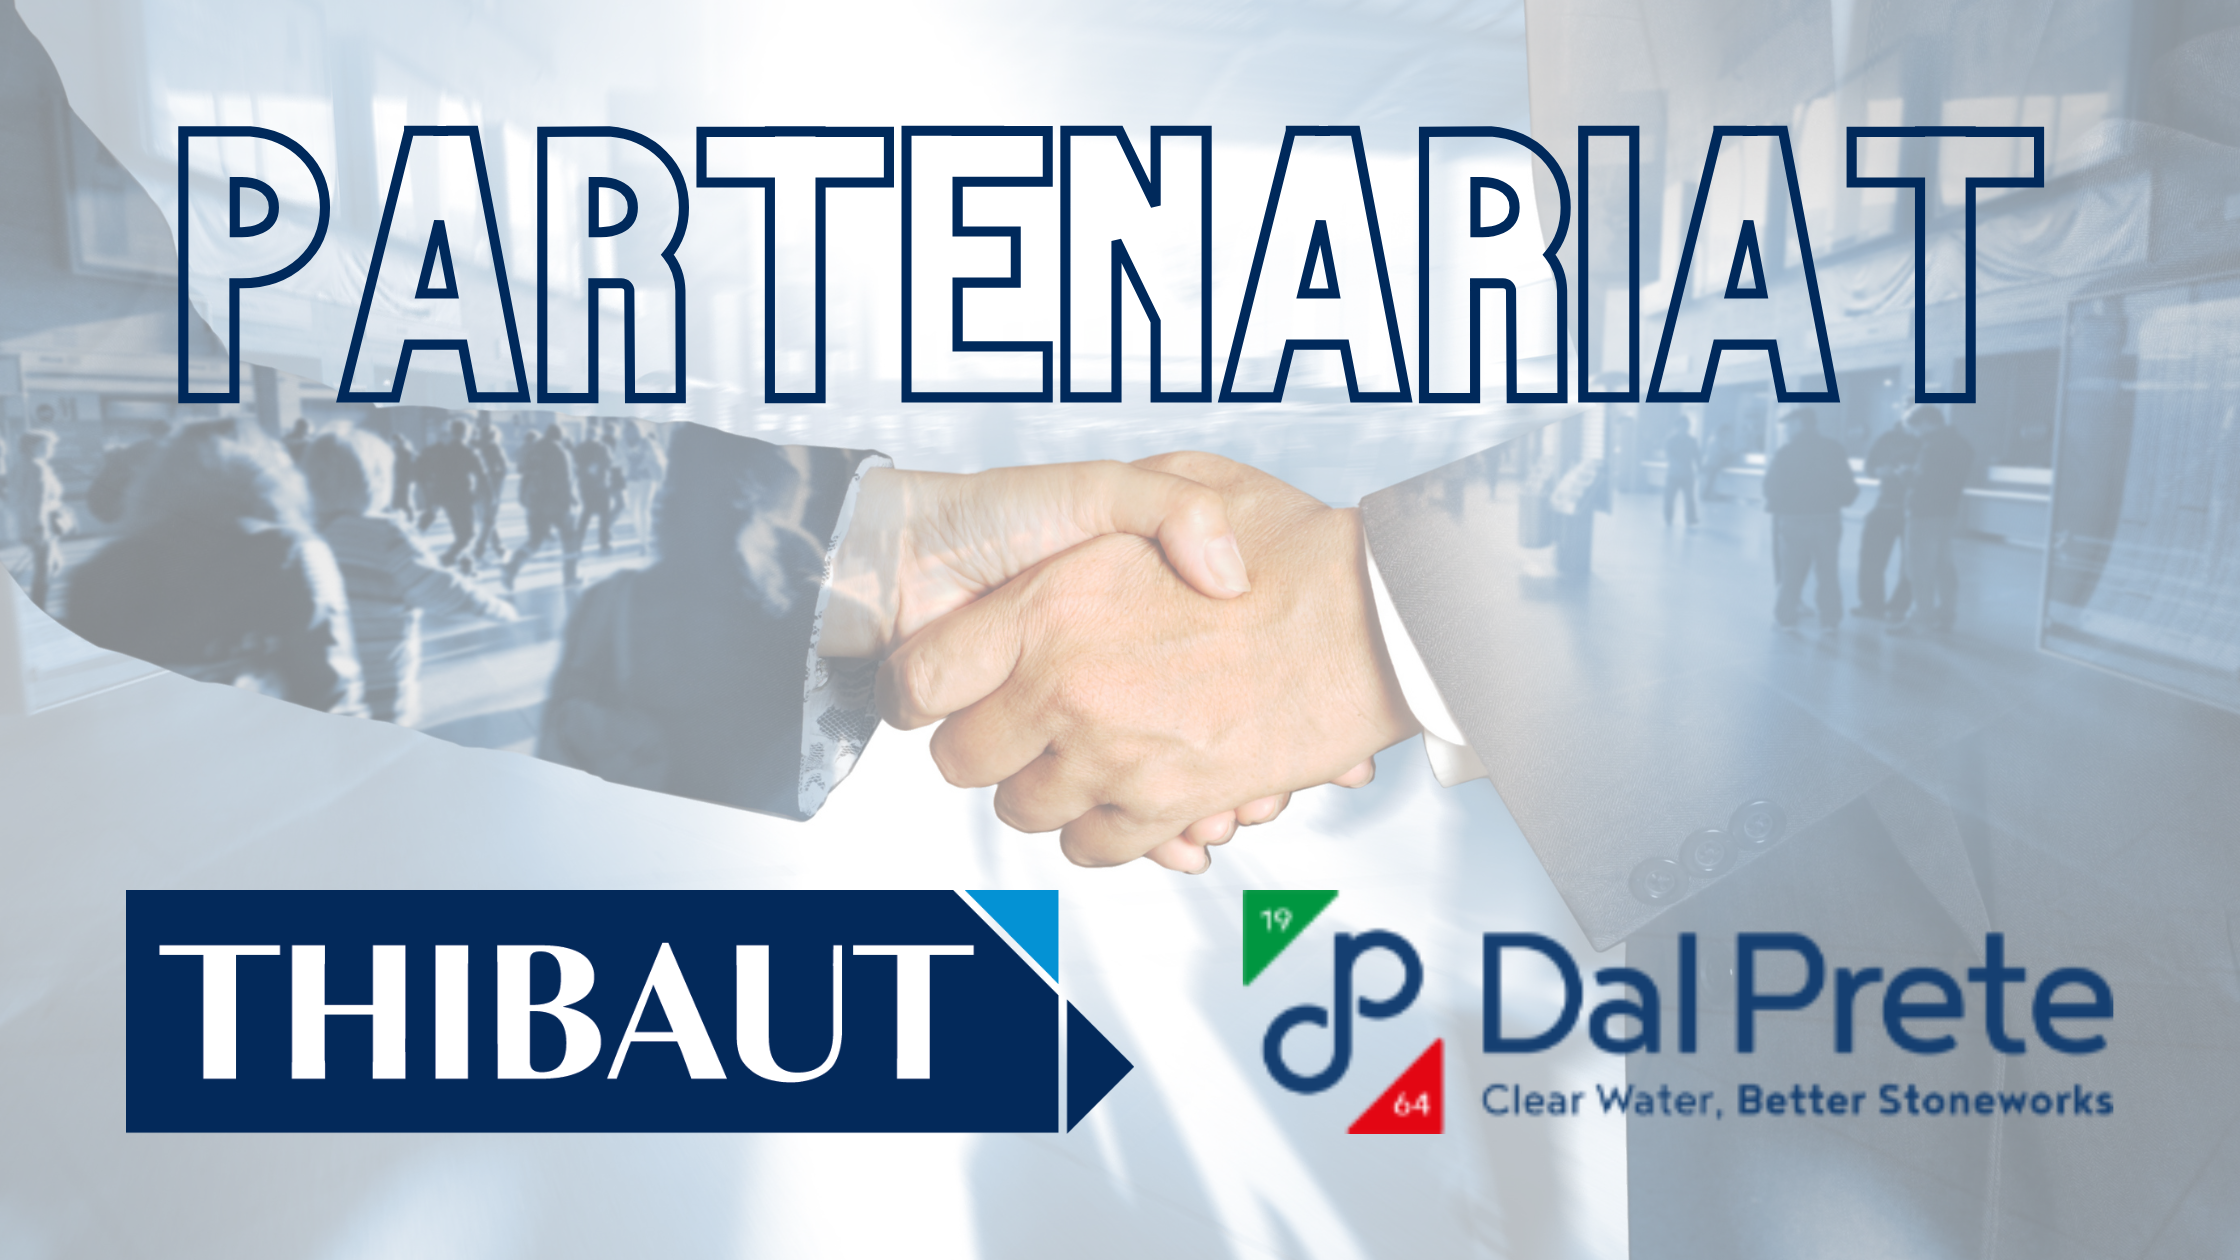 Thibaut renforce son offre en devenant distributeur exclusif des produits Dal Prete en France et en Belgique